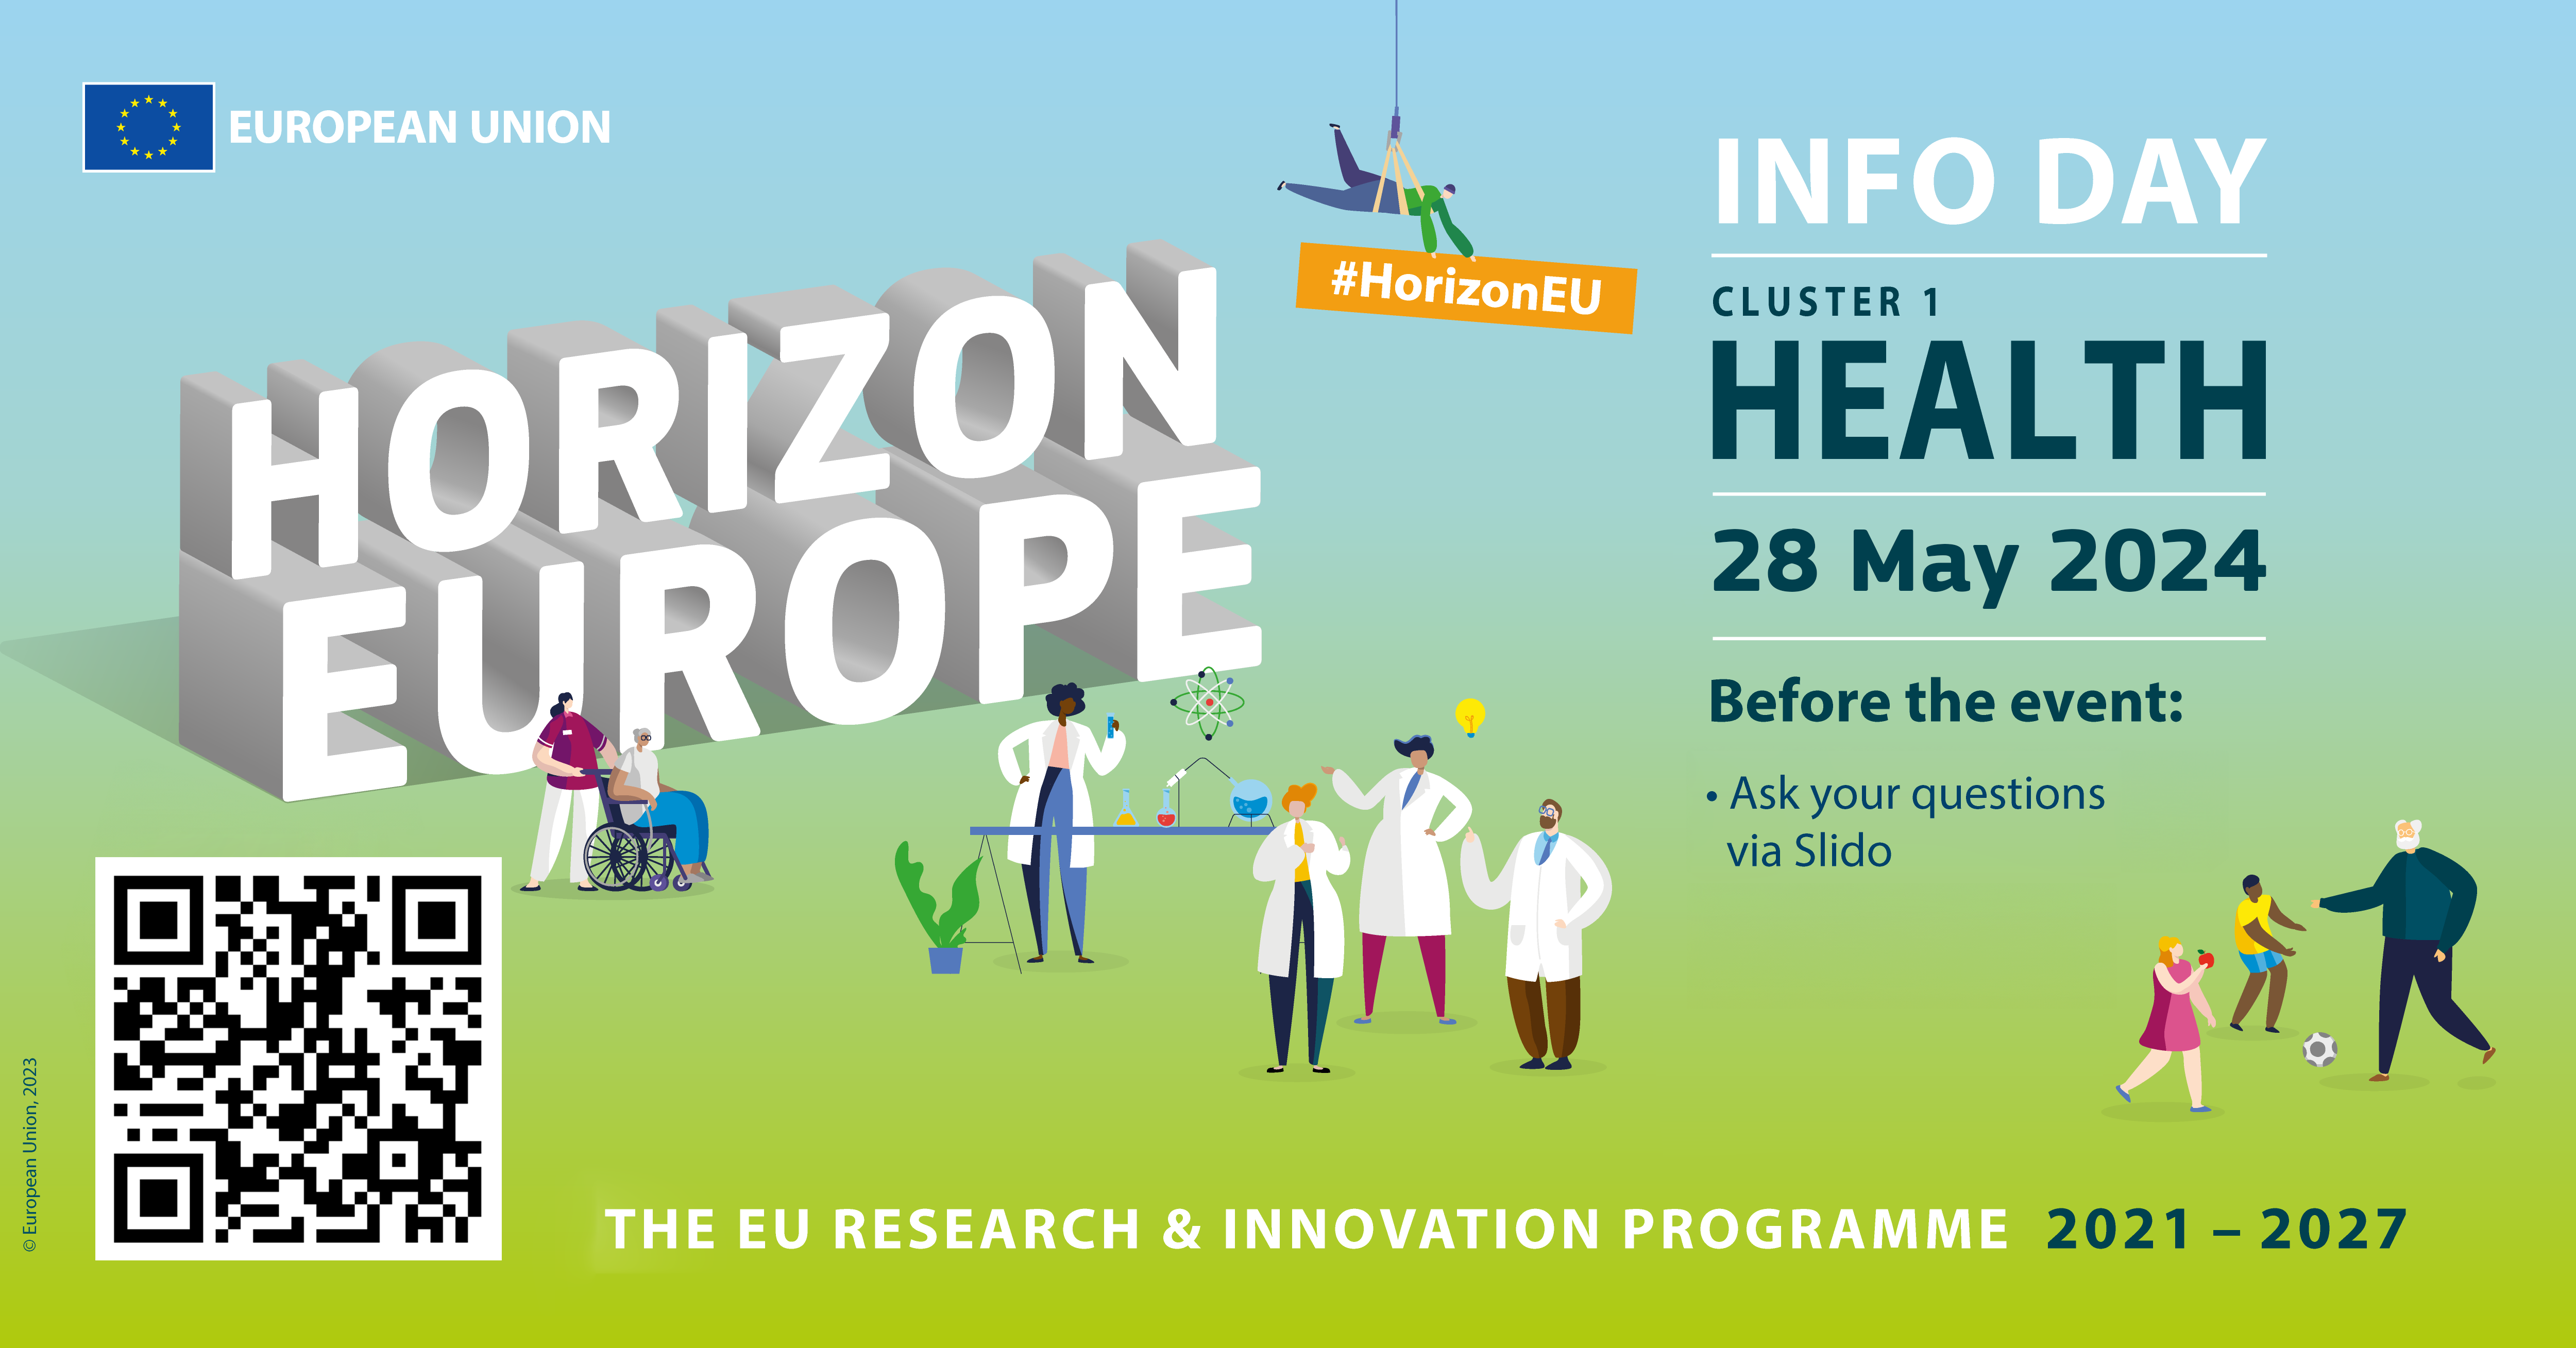 Horizon Europe 'Health' Info Day 28 May